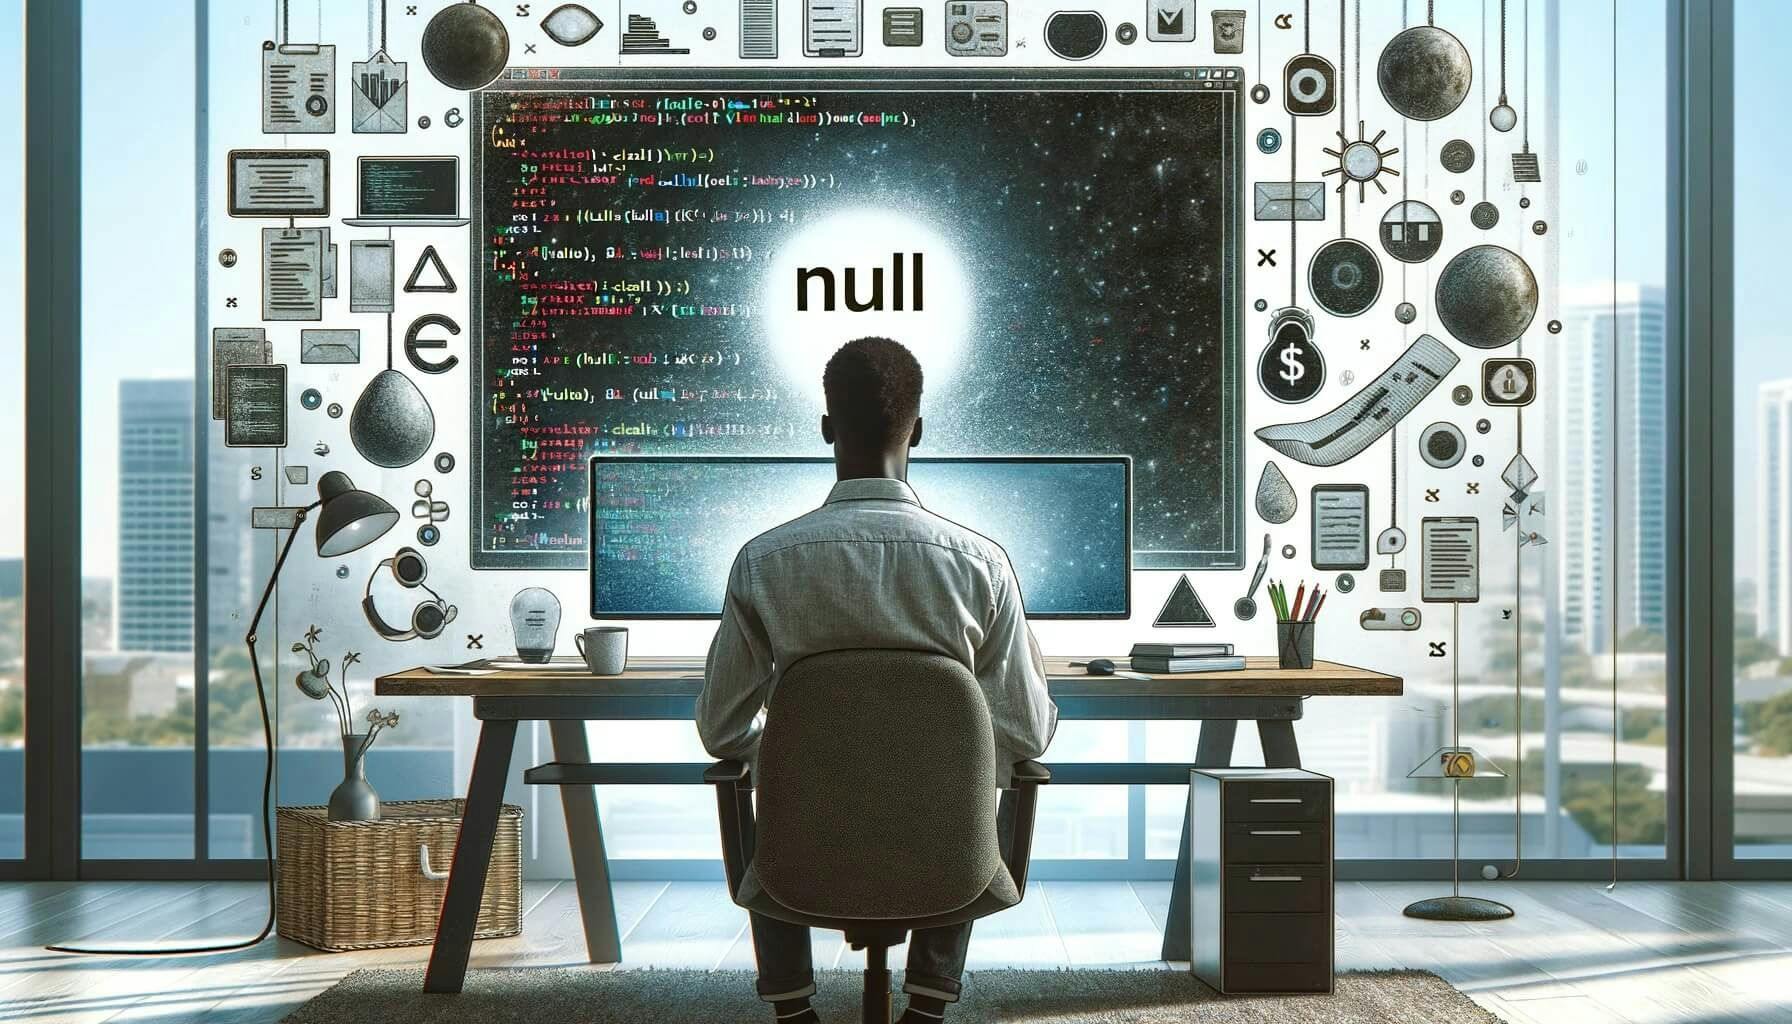 Null w programowaniu